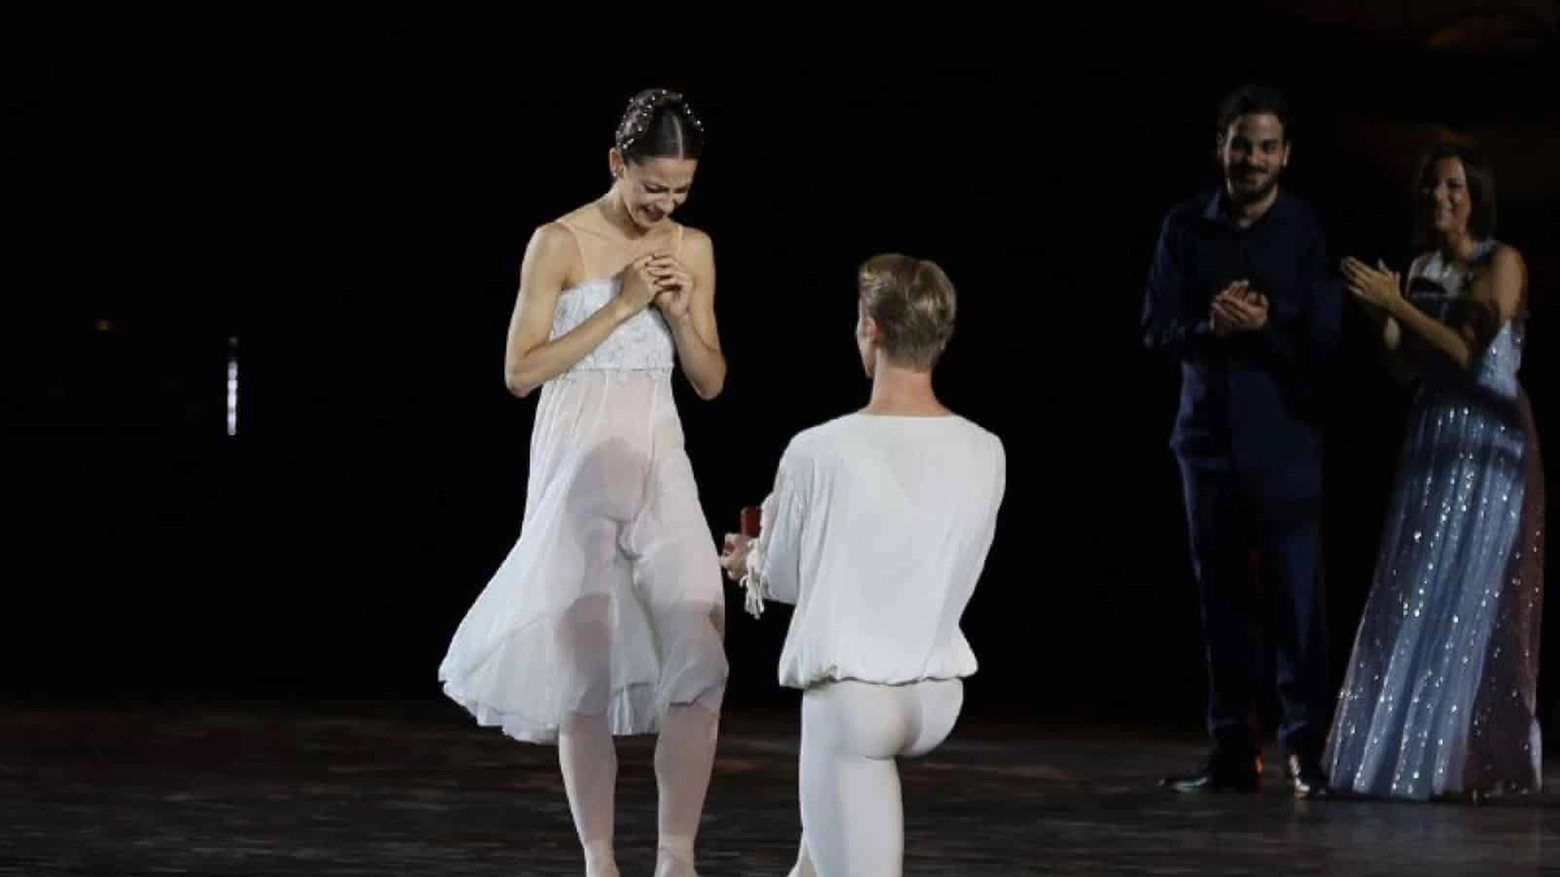 La proposta di nozze in scena all'Arena di Verona: Timofej Andrijashenko chiede la mano a Nicoletta Manni